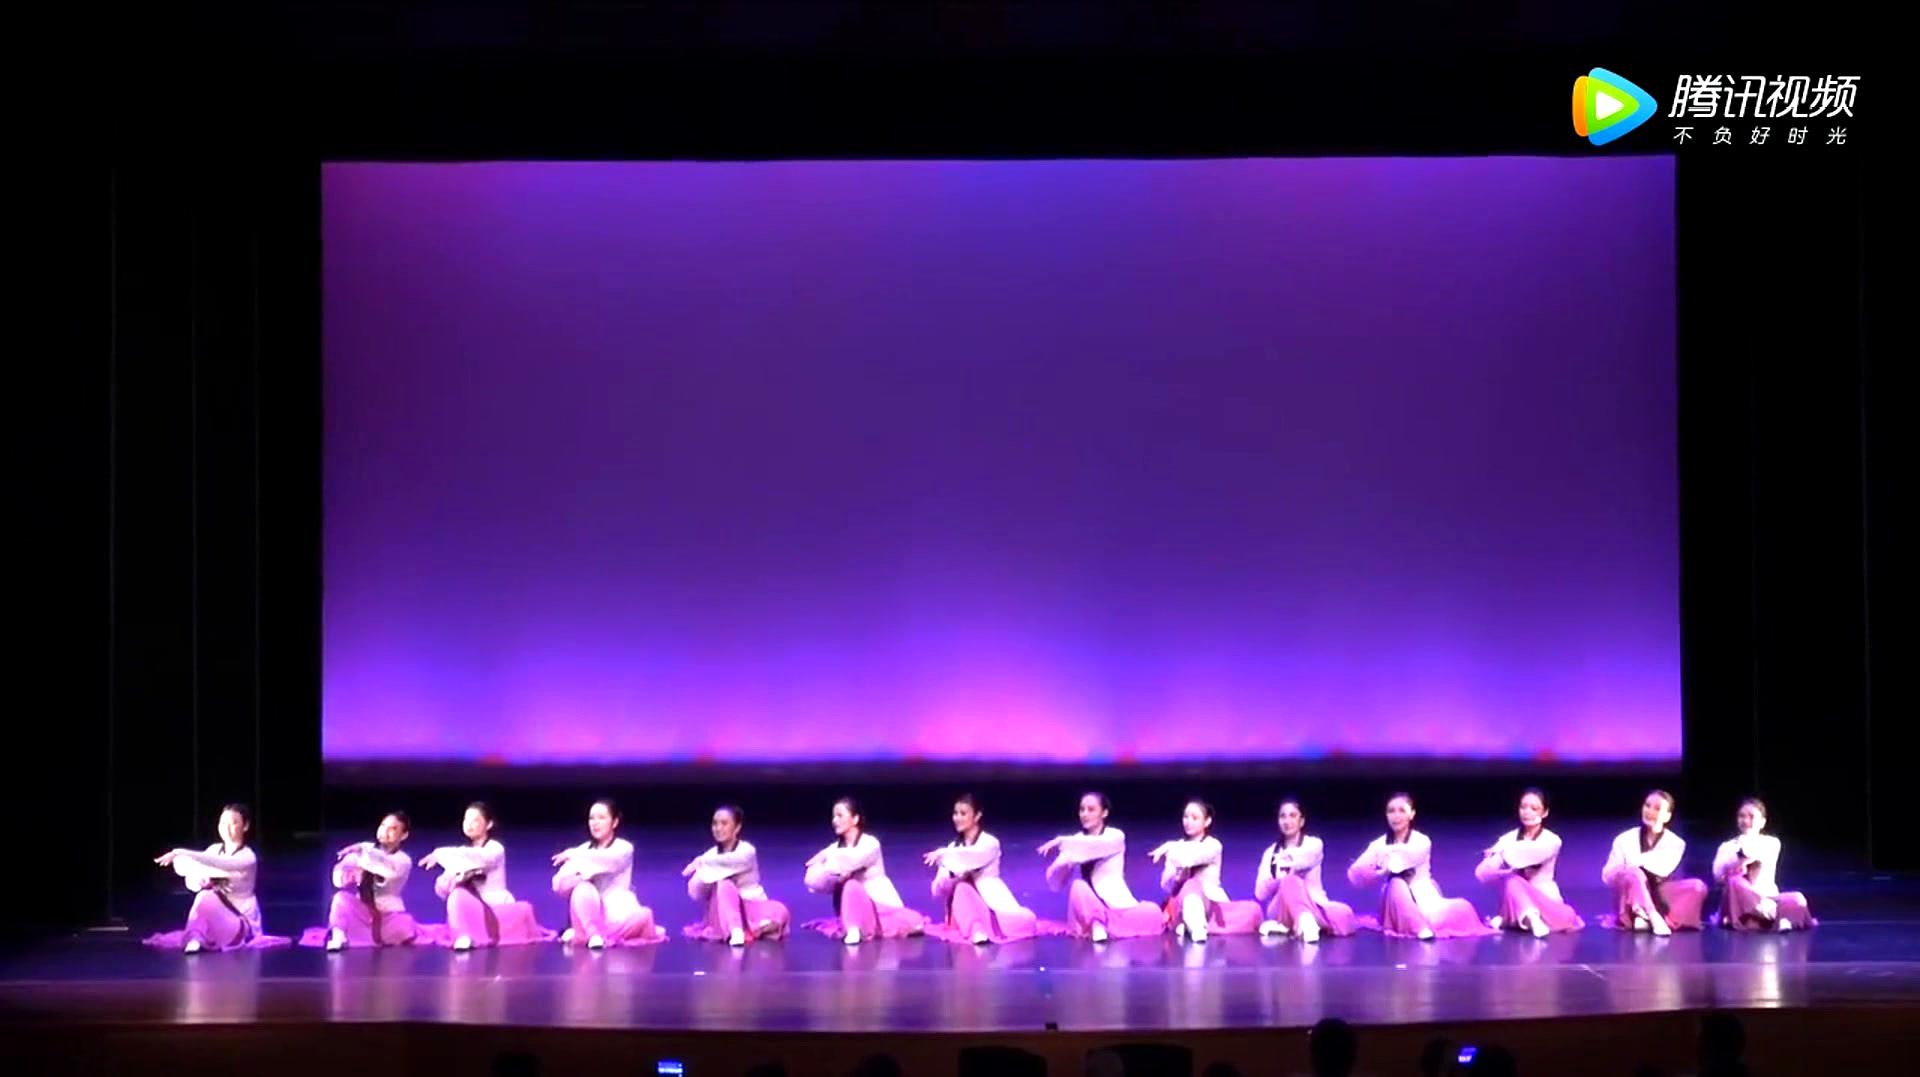 朝鲜族舞蹈:《阿里郎》,一支思念乡情的民族舞蹈